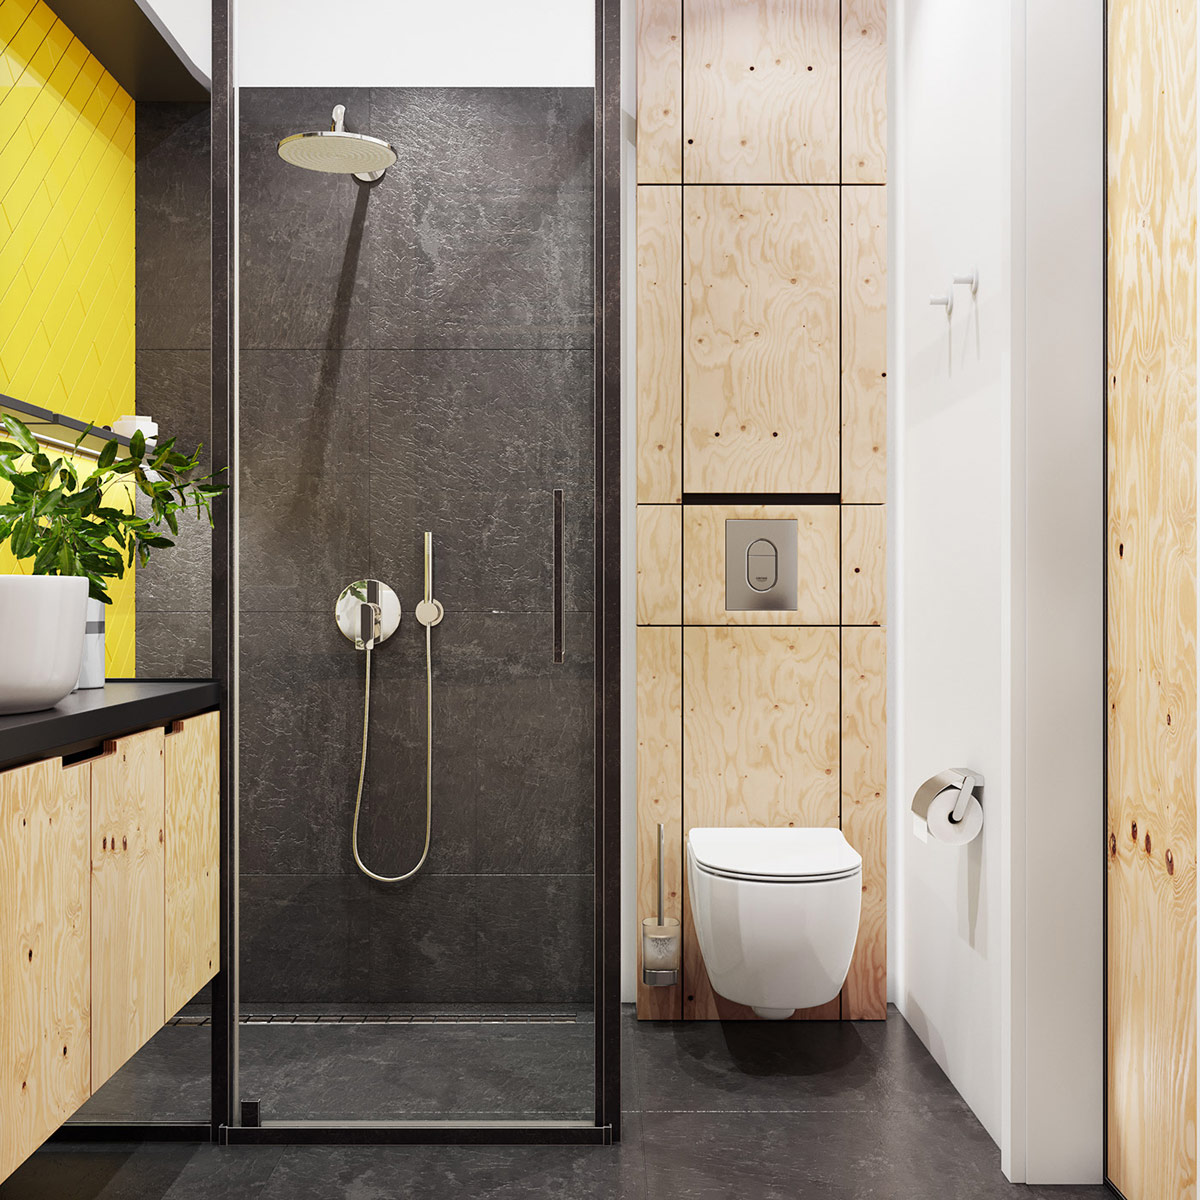 hình ảnh phòng tắm căn hộ nhỏ với tường và trần ốp lát gạch đá phiến màu xám đen, mảng tường màu vàng chanh, vòi sen đứng